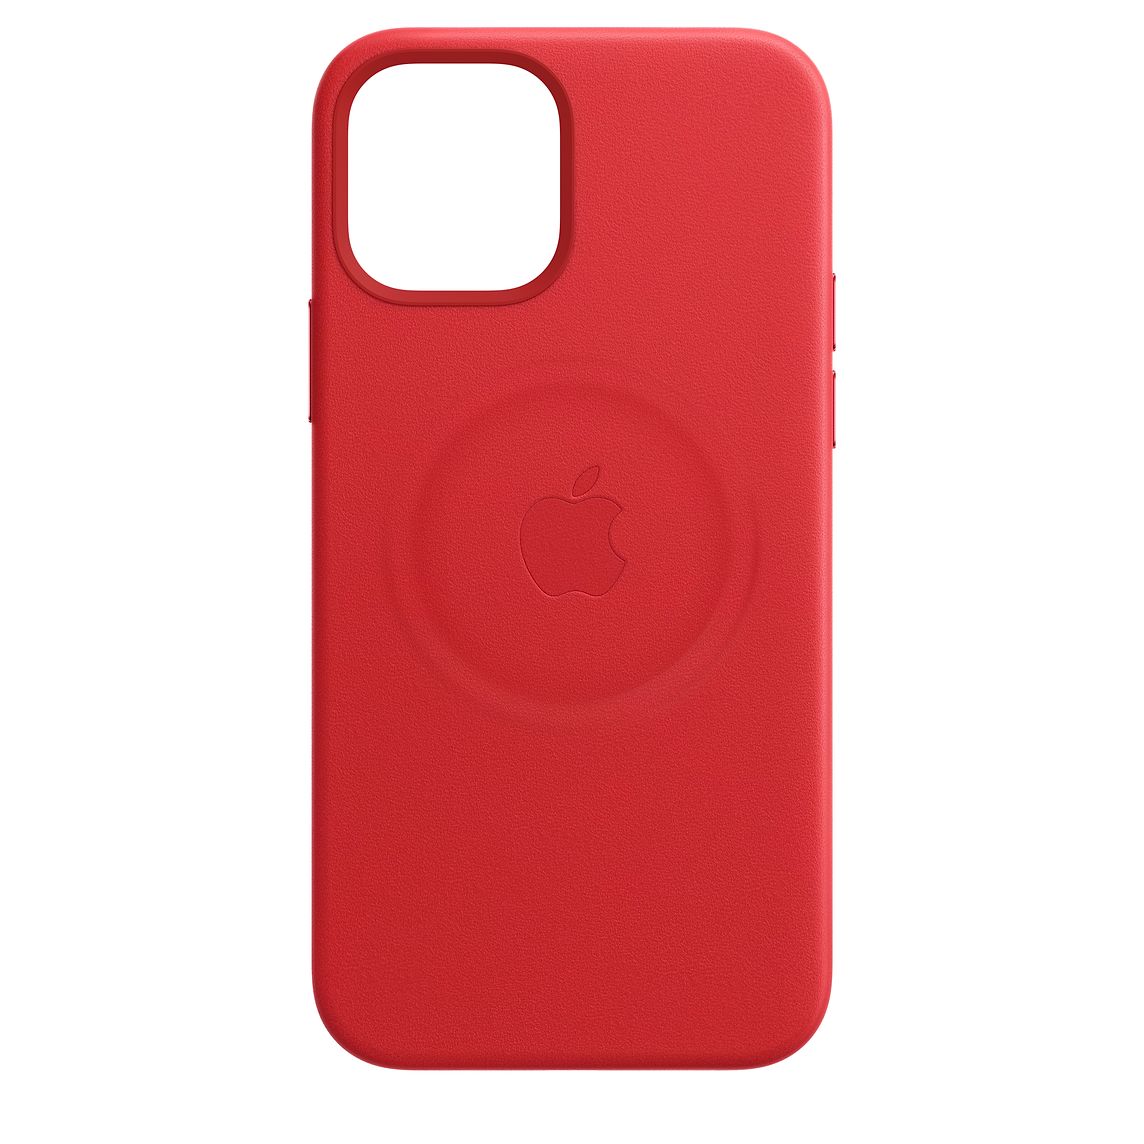 Фото — Чехол для смартфона Apple MagSafe для iPhone 12 Pro Max, кожа, красный (PRODUCT)RED